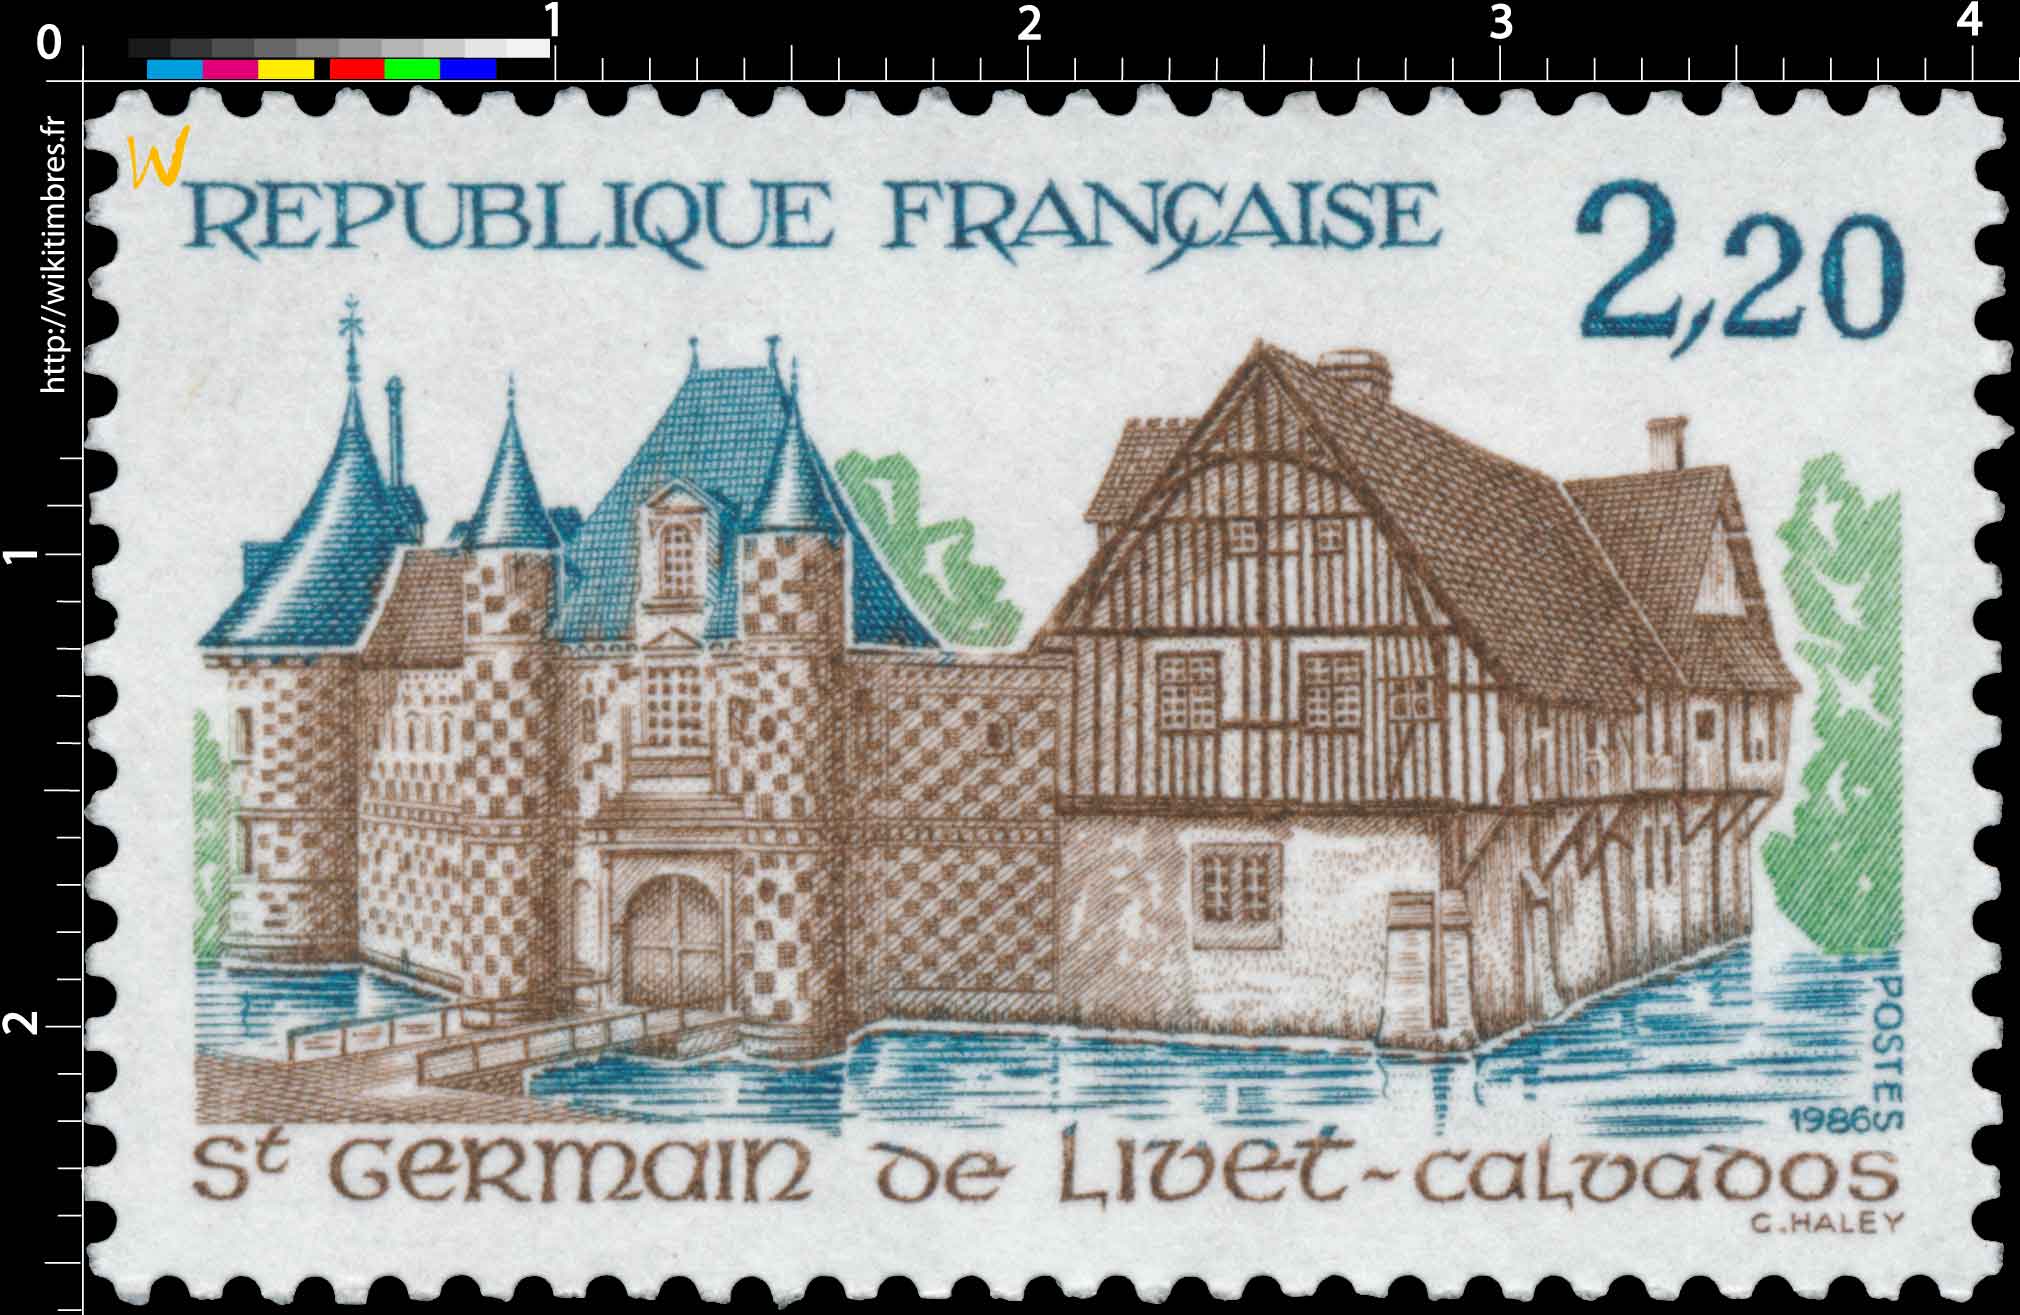 1986 St Germain de Livet - Calvados